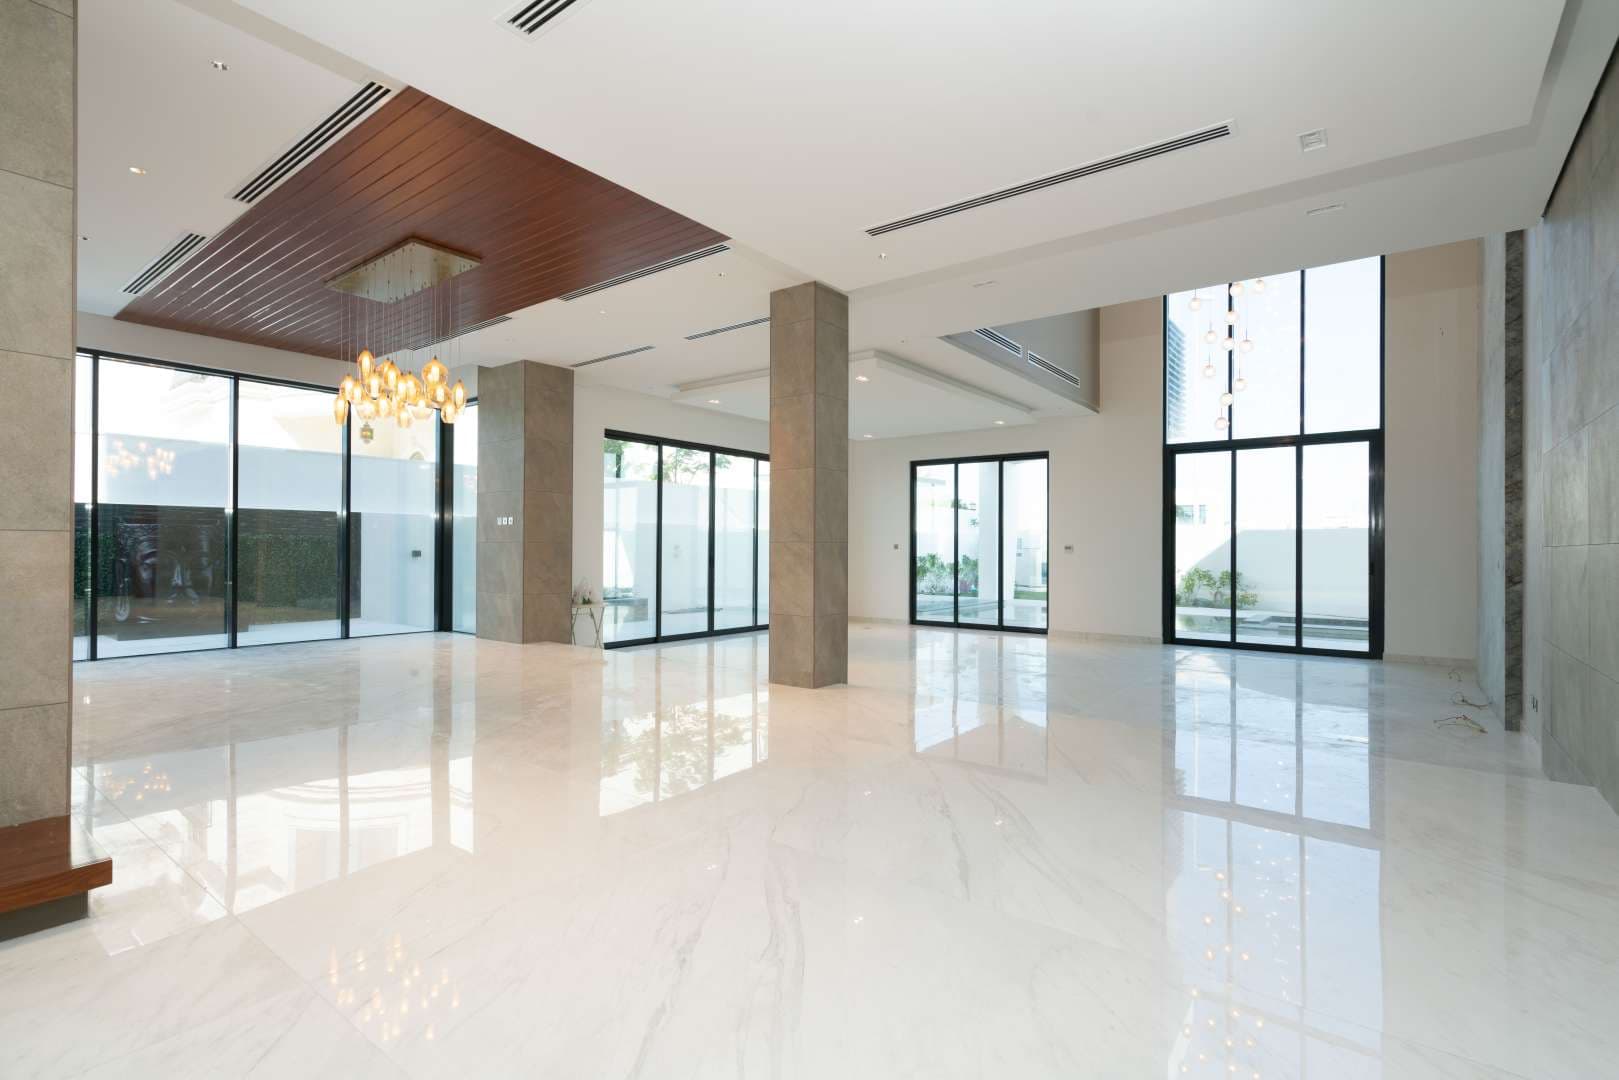 6 Bedroom Villa For Sale Pearl Jumeirah Villas Lp04795 7ddede2cf60c000.jpg